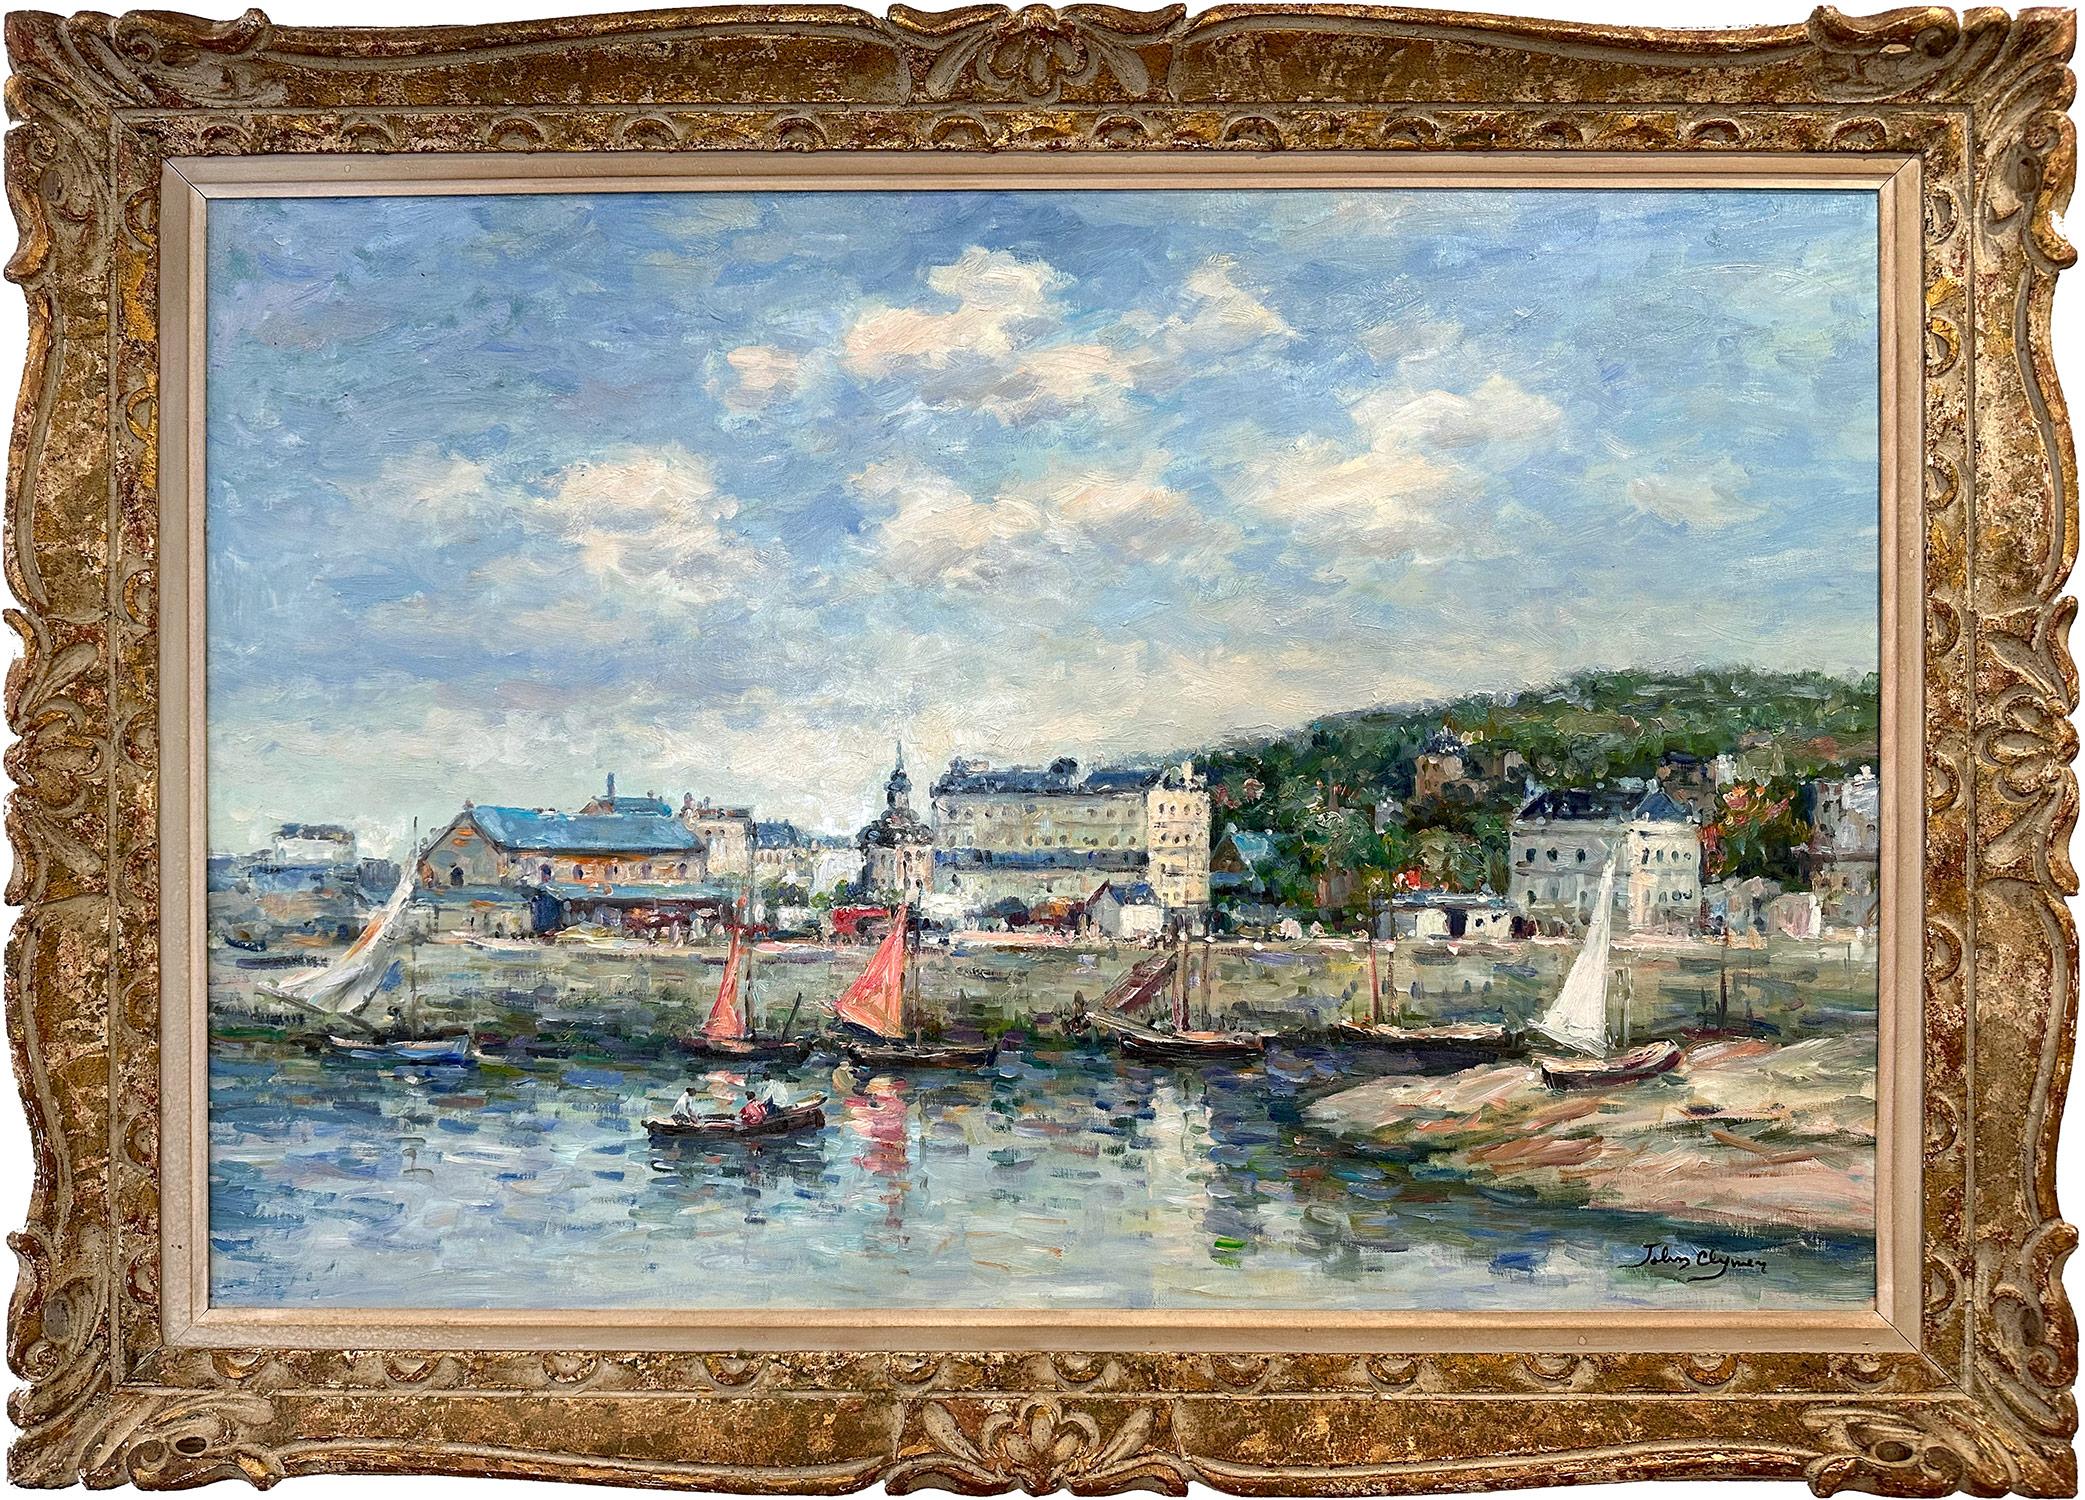 Figurative Painting John Clymer - "Le Port de Trouville-sur-Mer" Peinture impressionniste britannique américaine de rivage